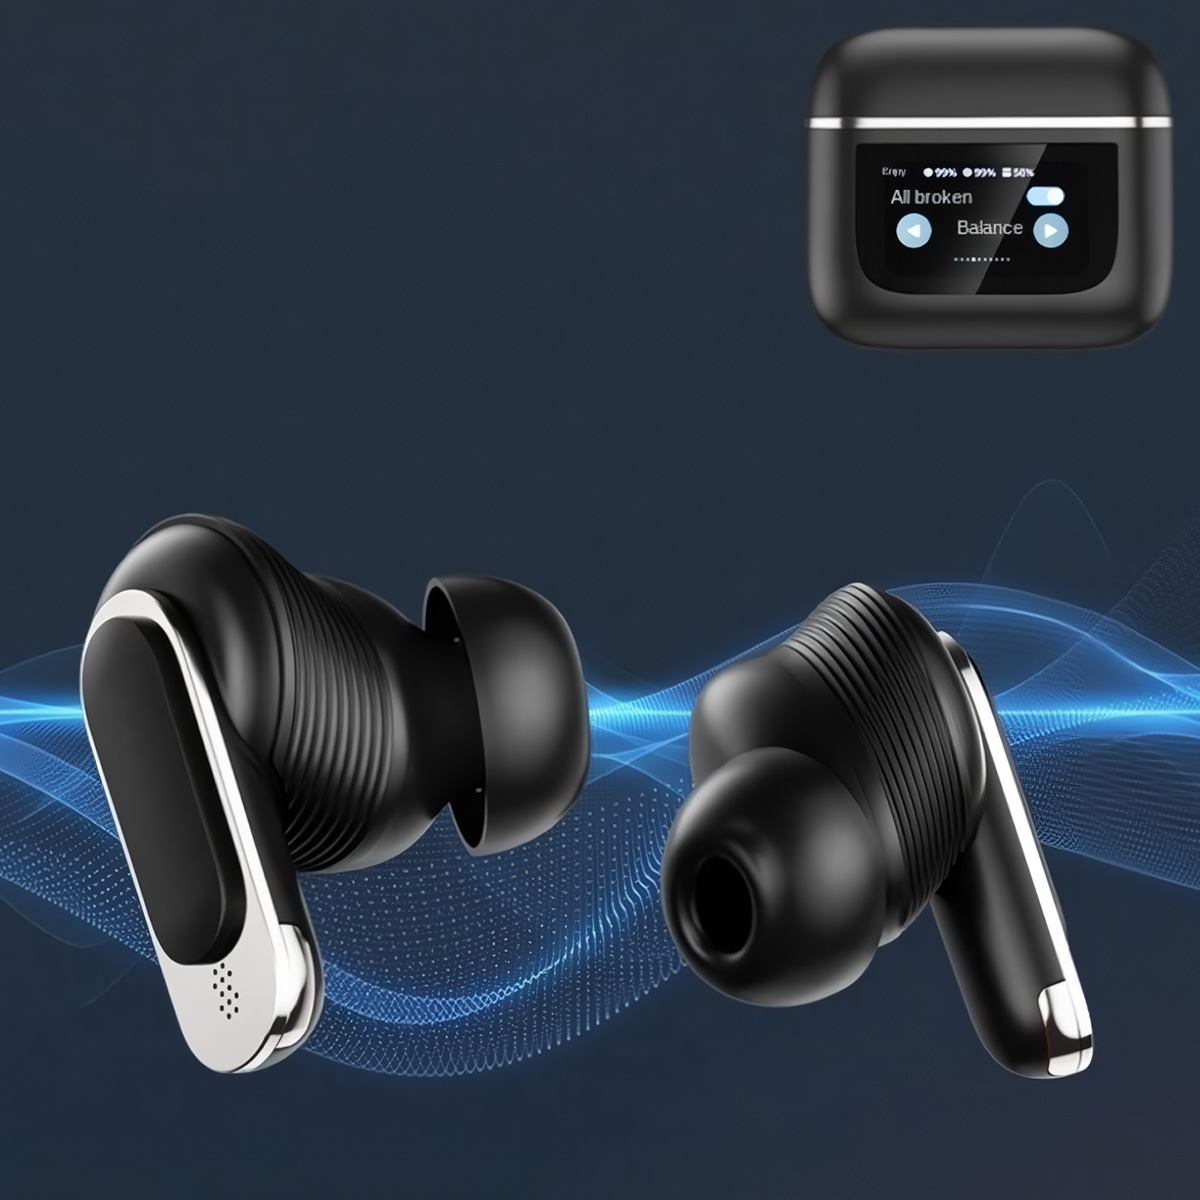 Auriculares Bluetooth Klack Con Cancelación De Ruido Real (Anc) Y Pantalla Táctil Inteligente  MKP